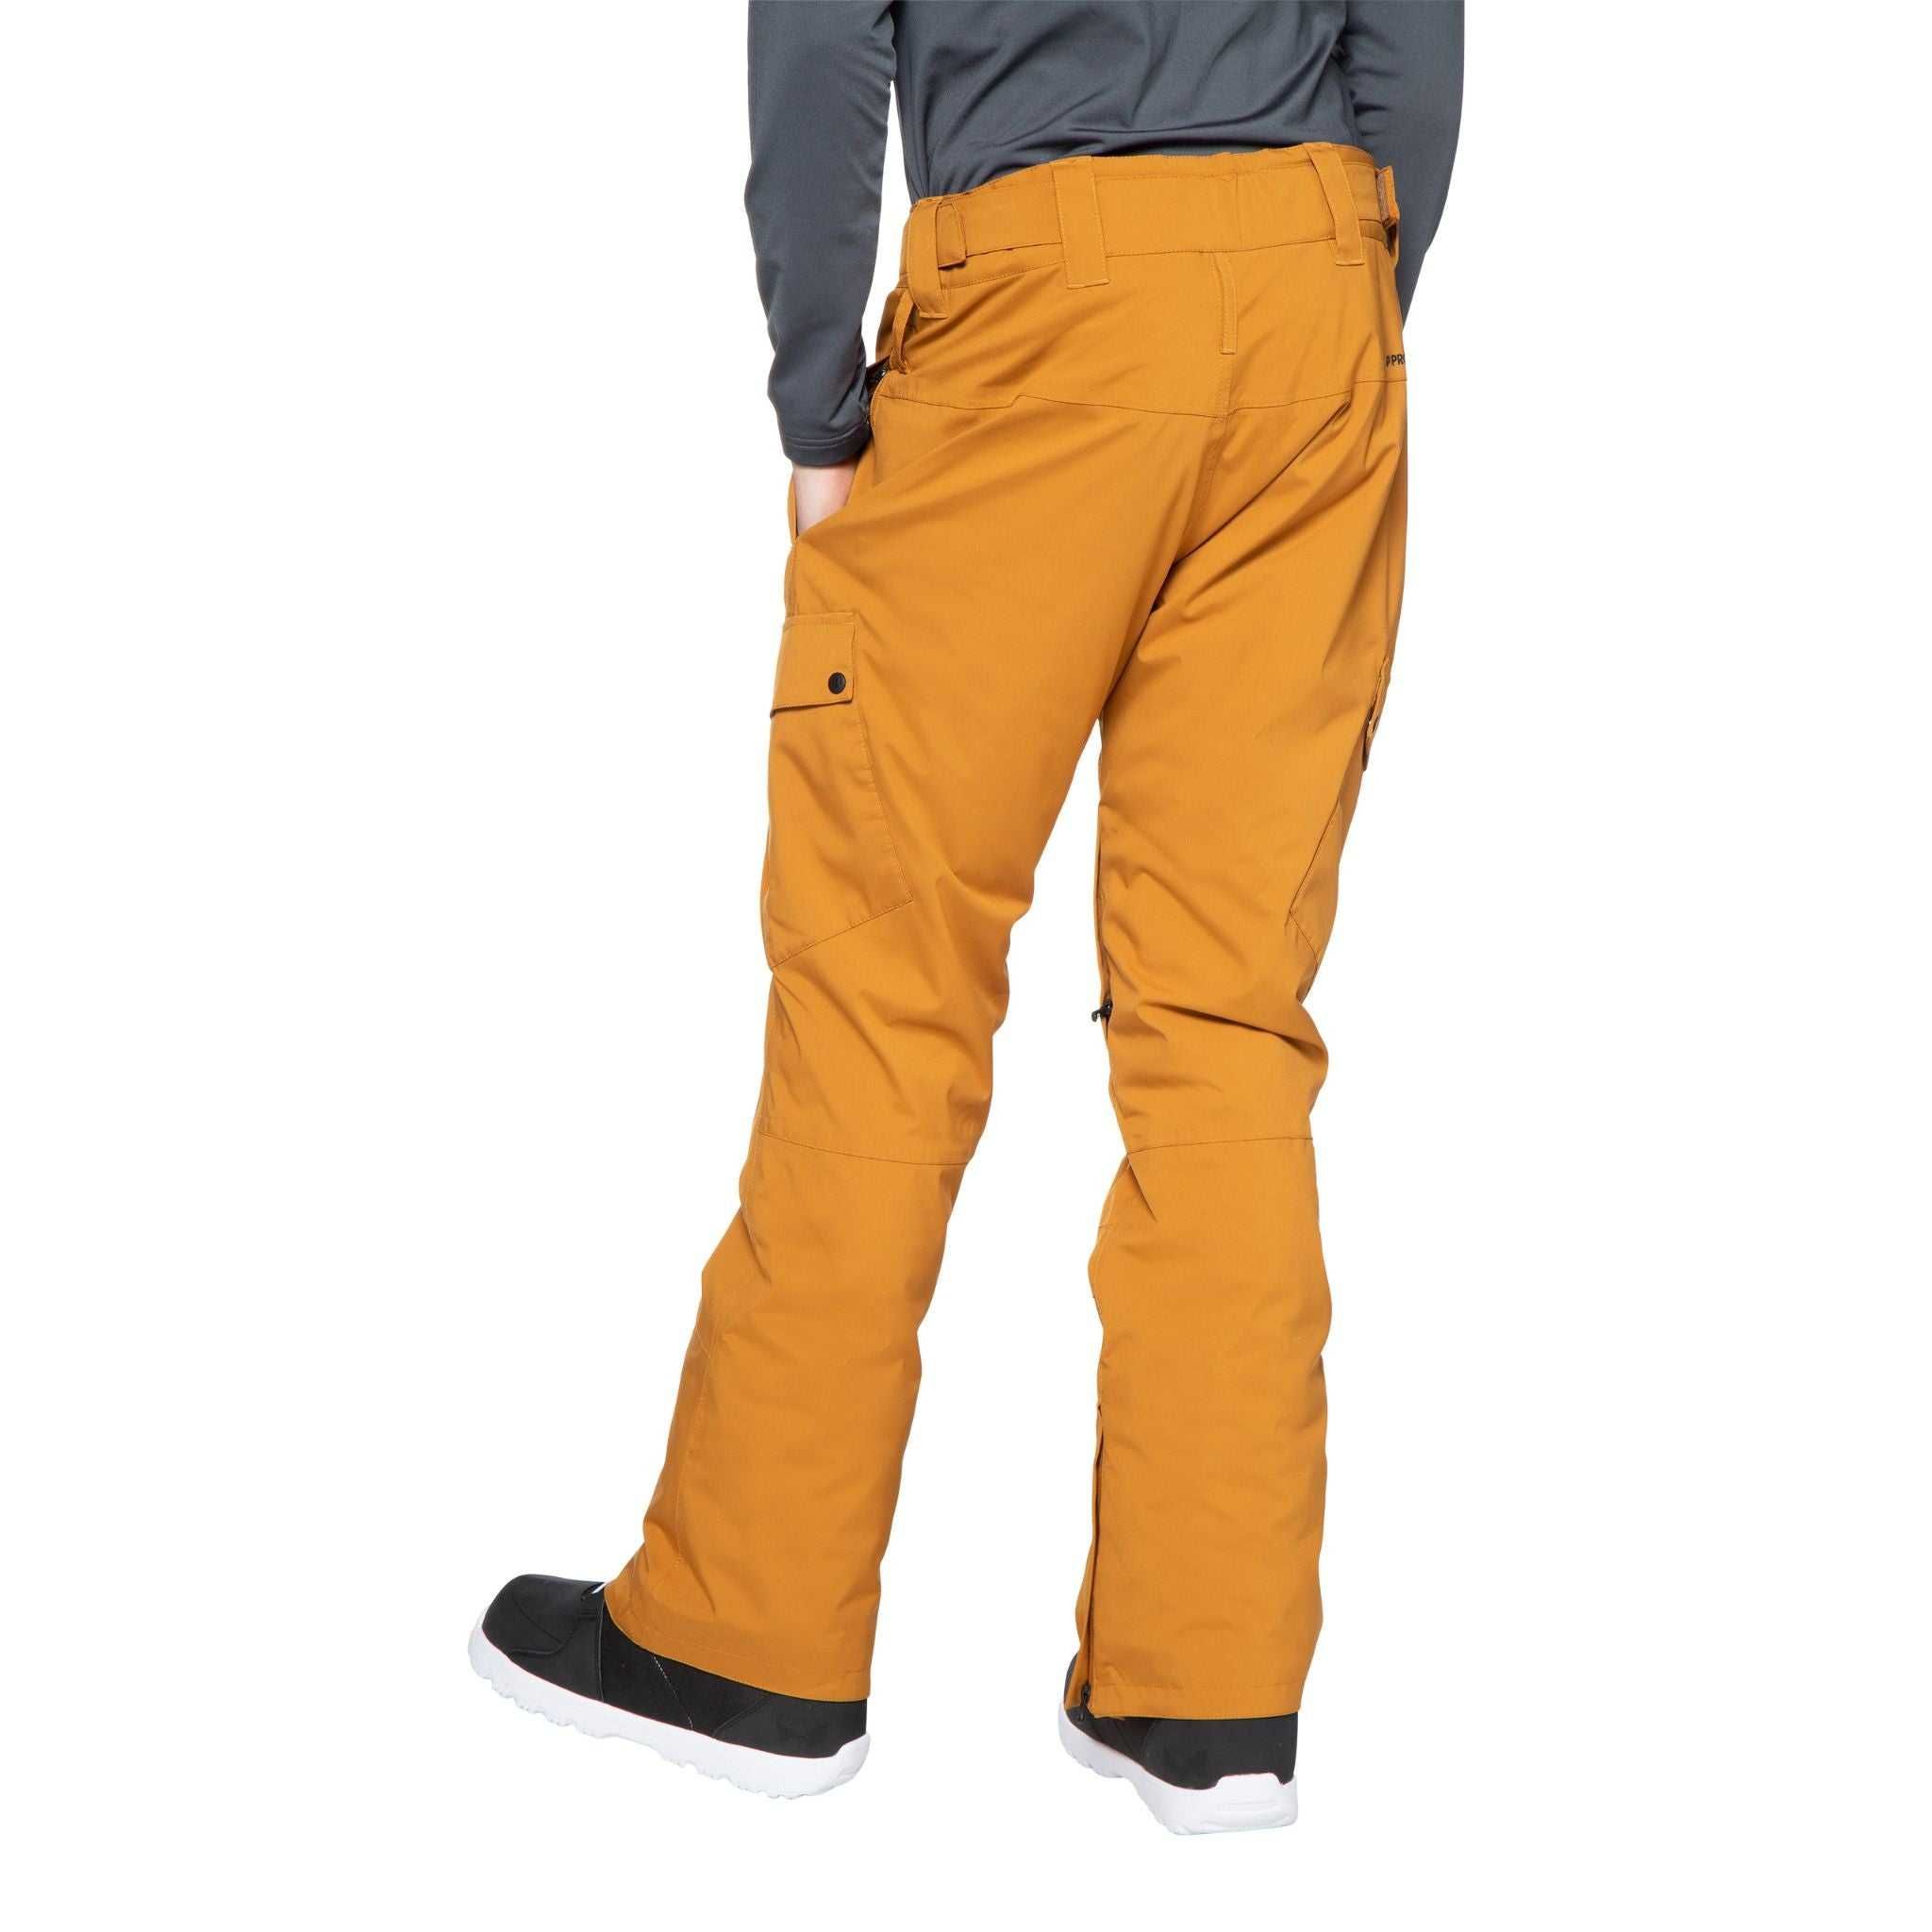 Protest Zucca 20k, XL, нов, оригинален мъжки ски/сноуборд панталон